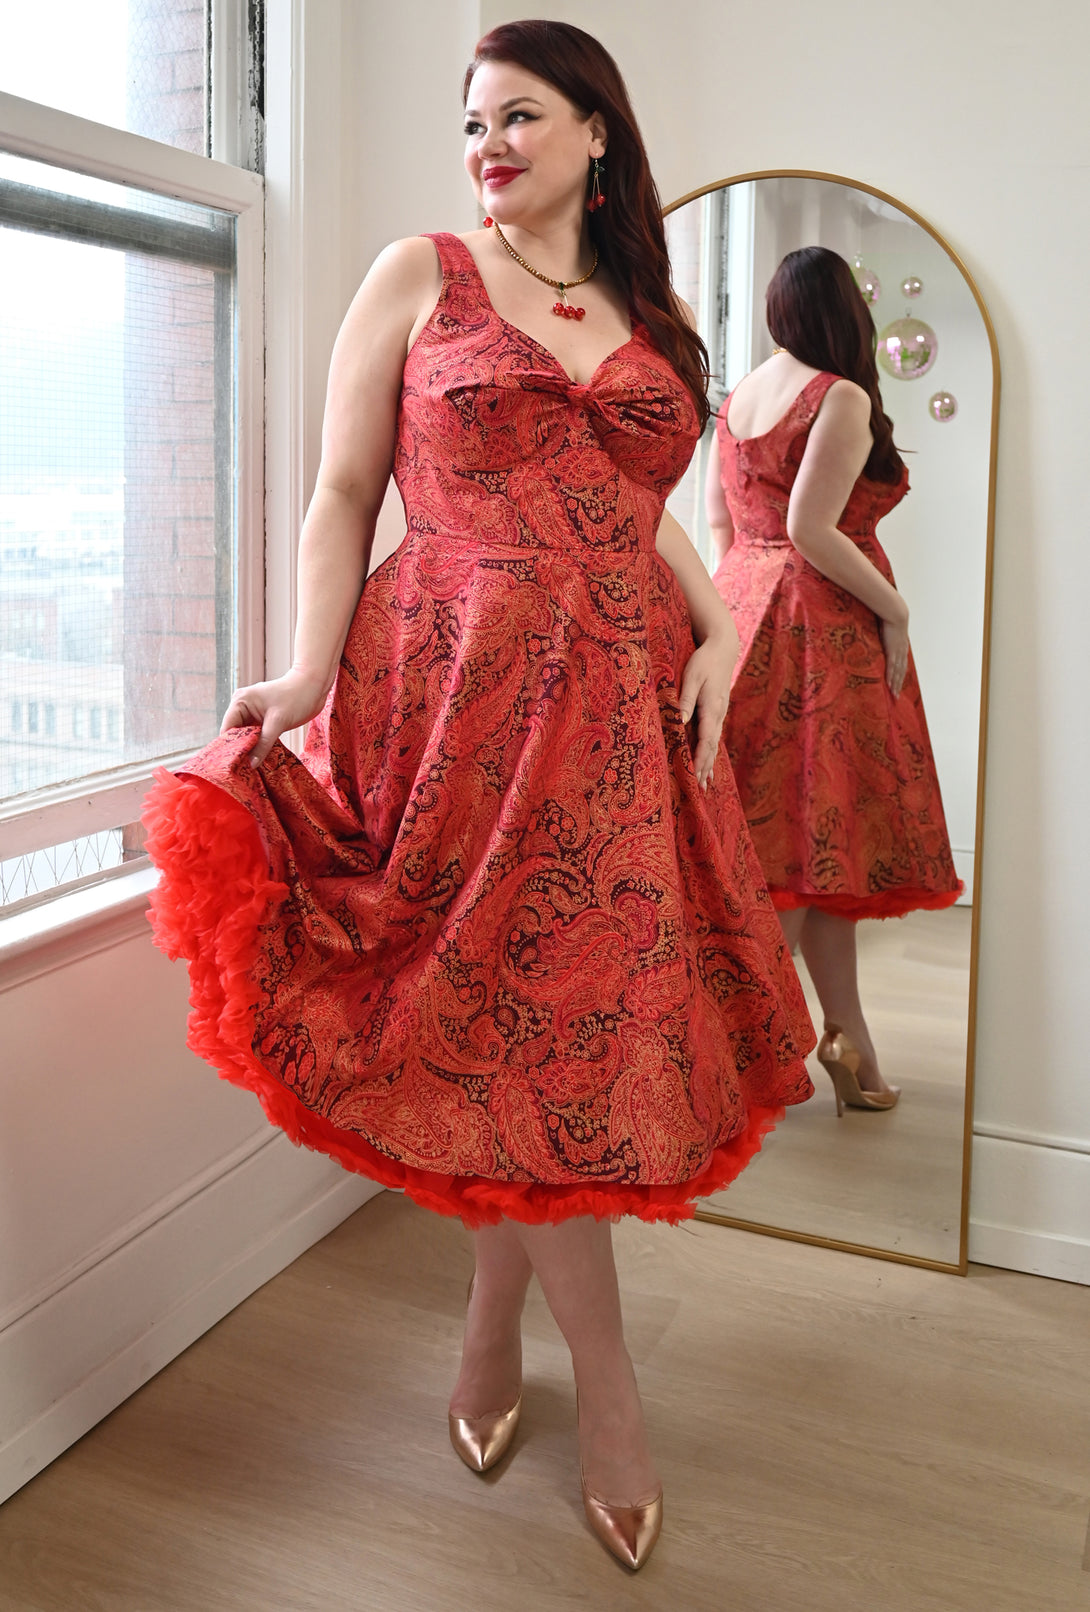 Diane - Regally Rouge - Red Paisley Dress – Cherry Velvet